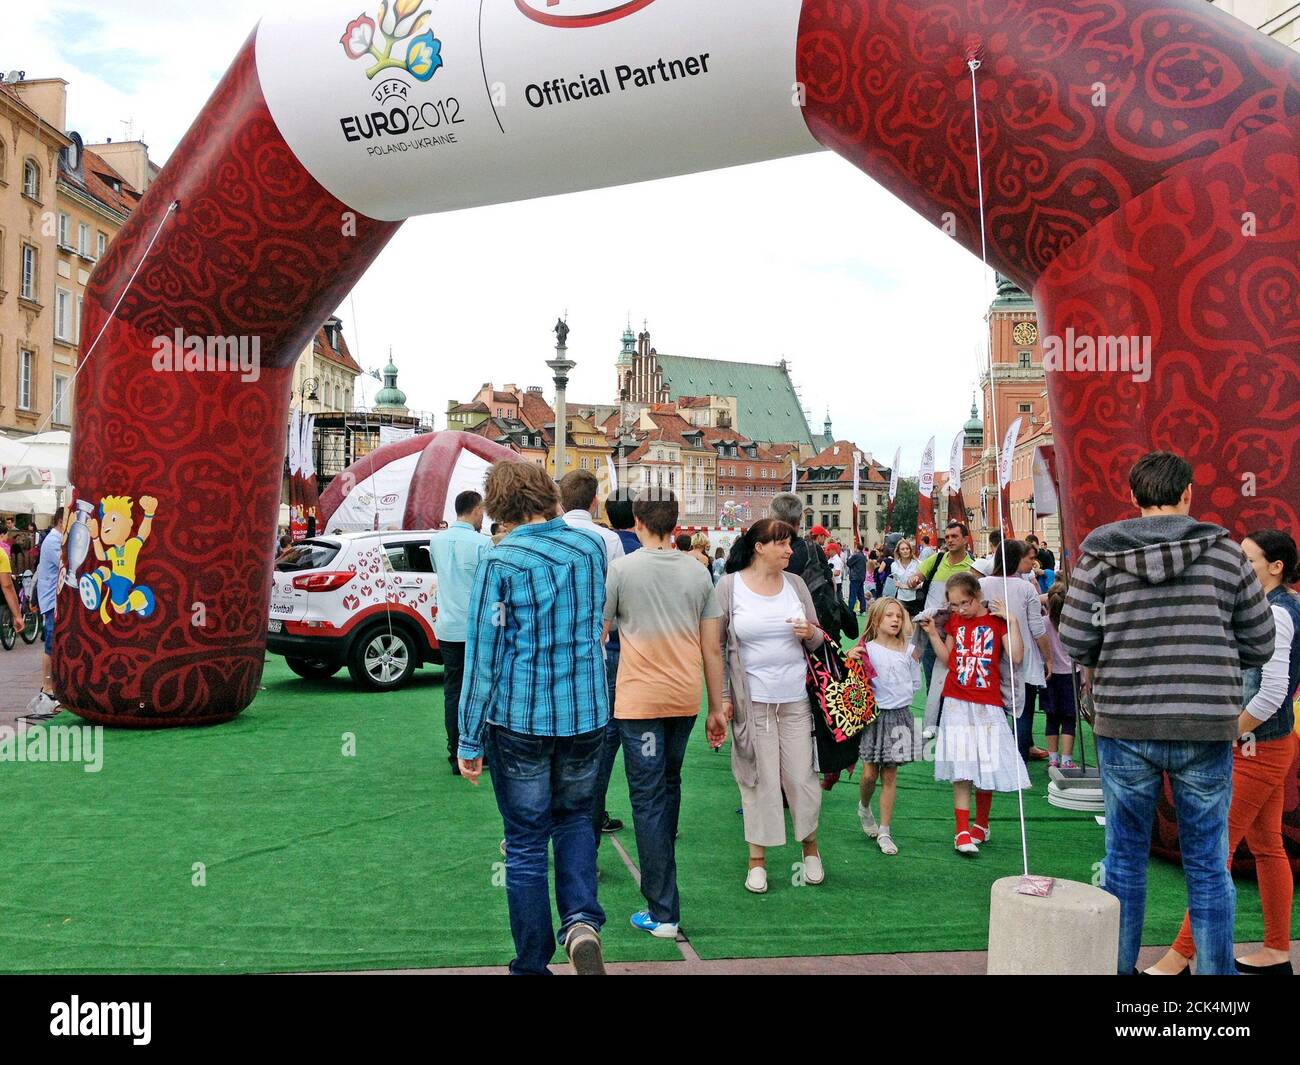 Besucher der Altstadt in Warschau, Polen, nehmen an Aktivitäten rund um die Co-Hosting der Fußball-Europameisterschaft 2012. Stockfoto